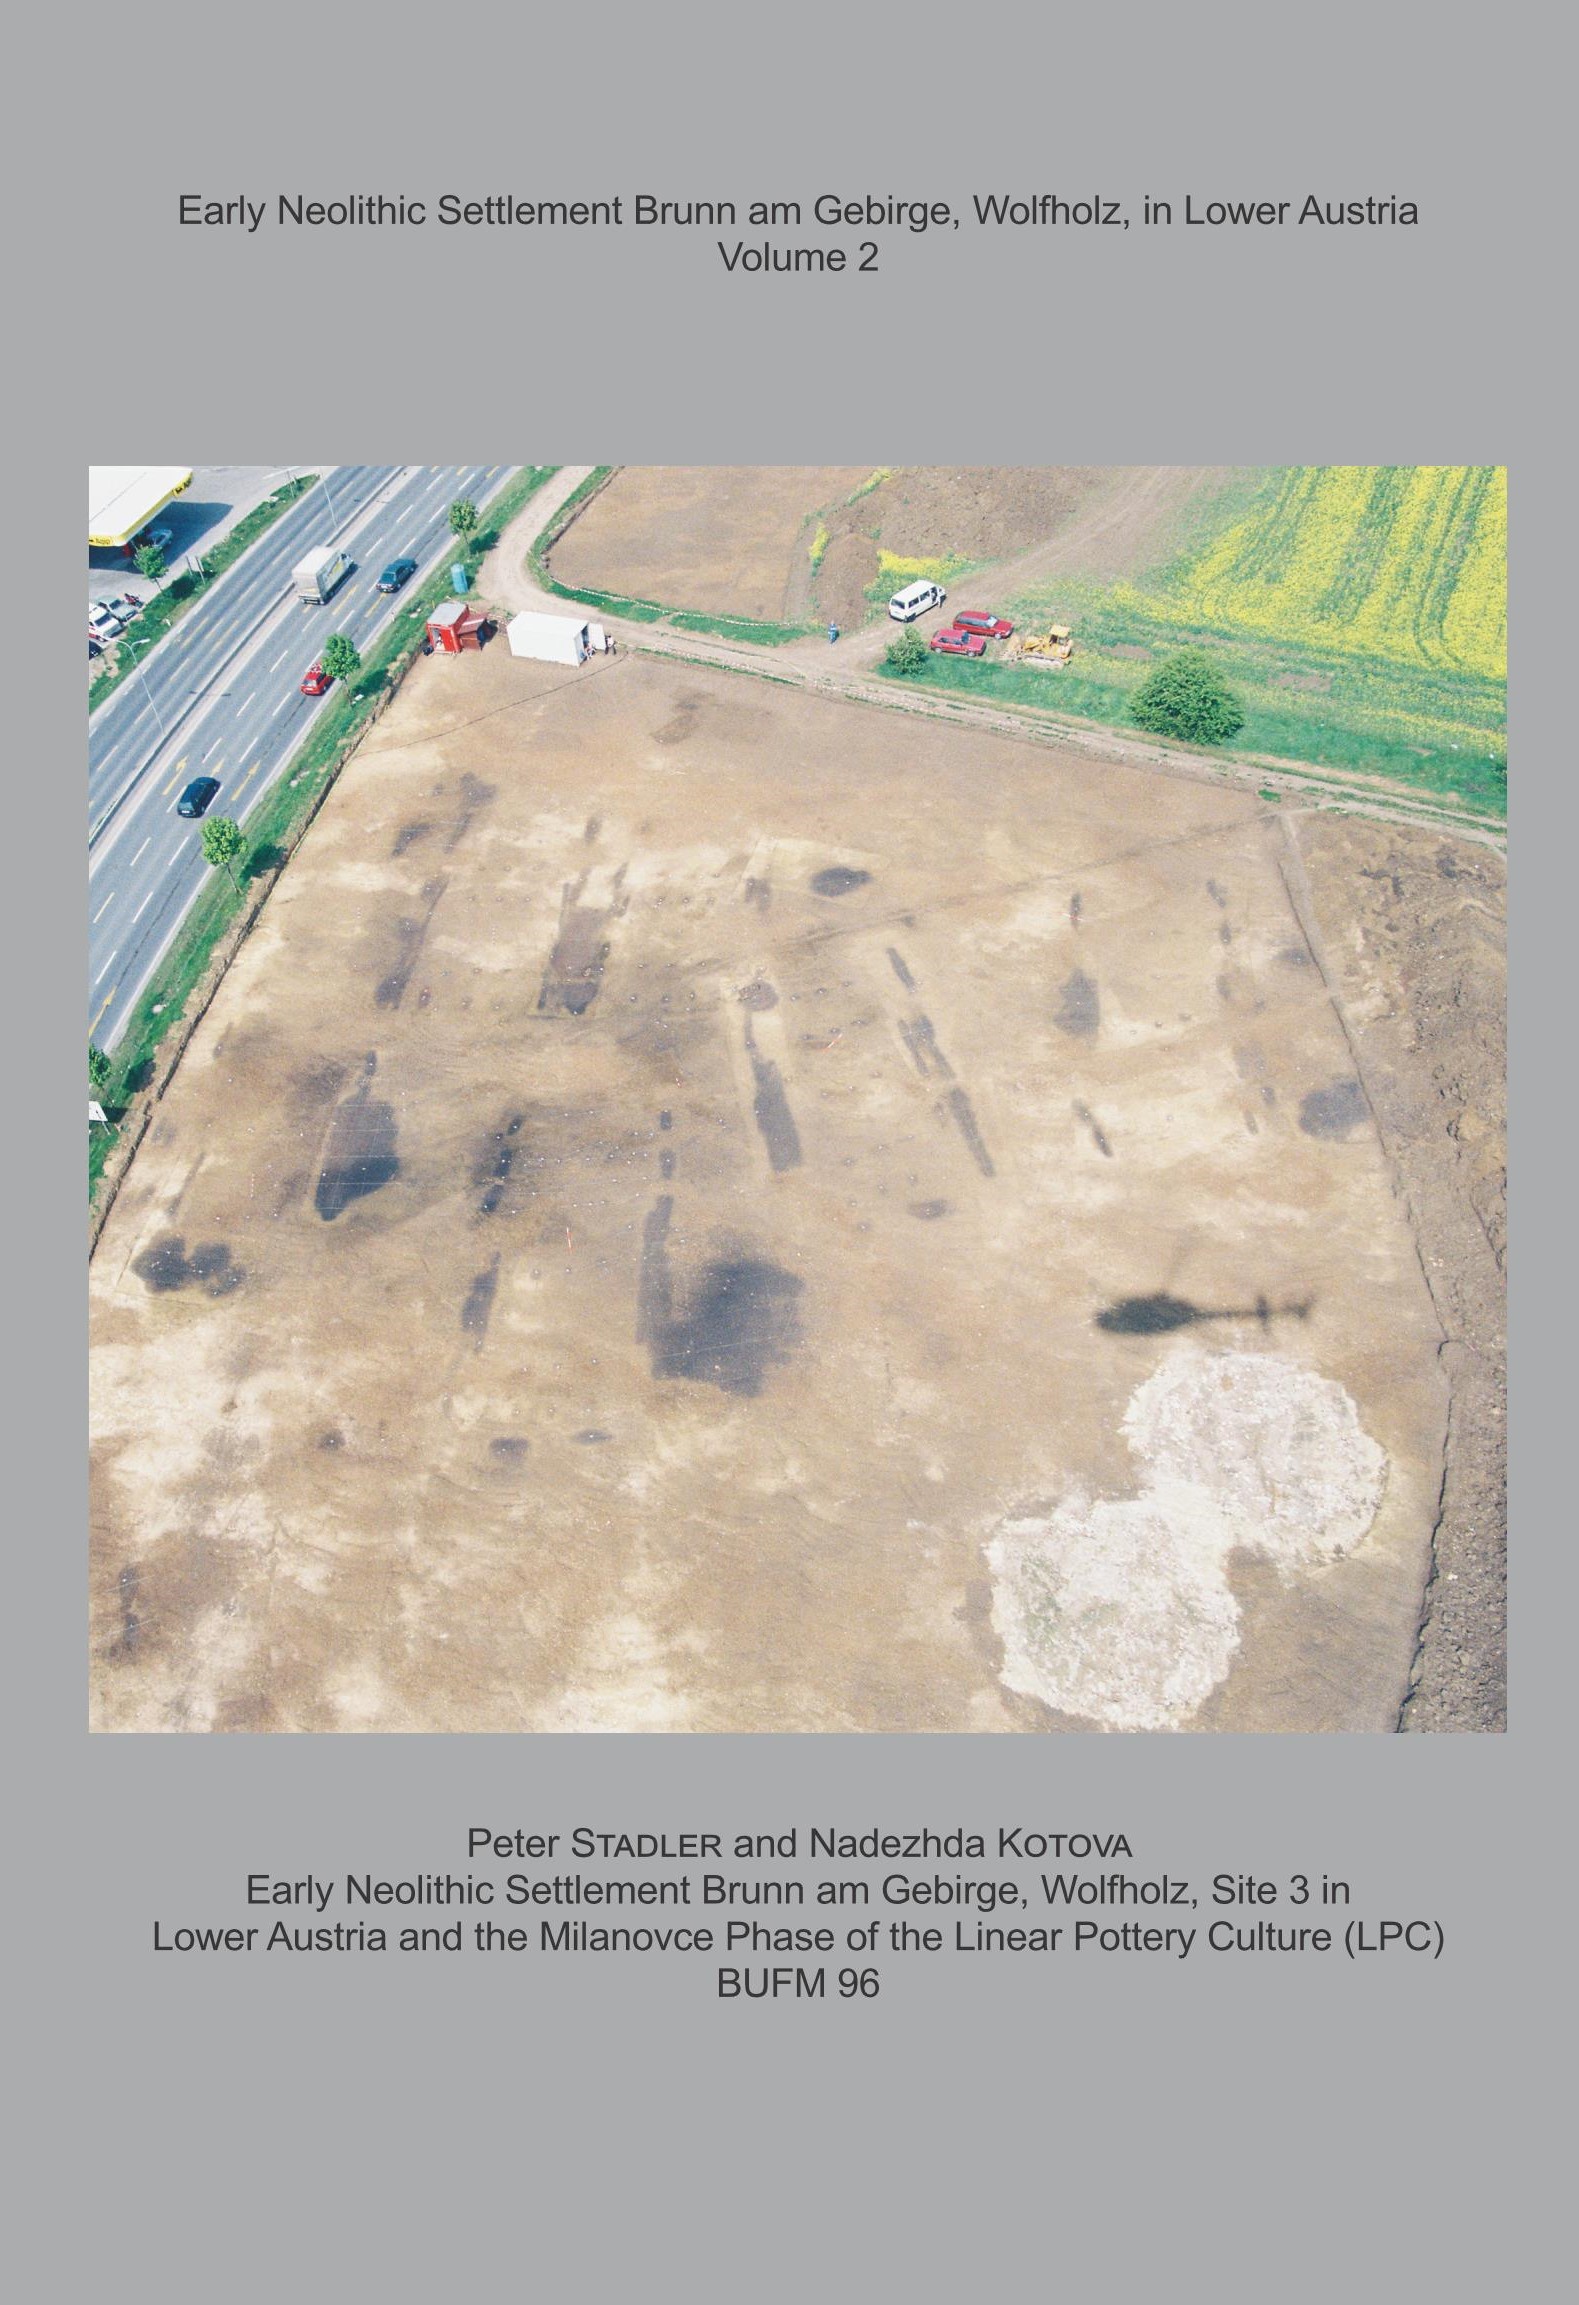 BUFM 96) Early Neolithic Settlement Brunn am Gebirge, Wolfholz, in Lower Austria Volume 2 - Peter Stadler & Nadezhda Kotova (Hrsg.)